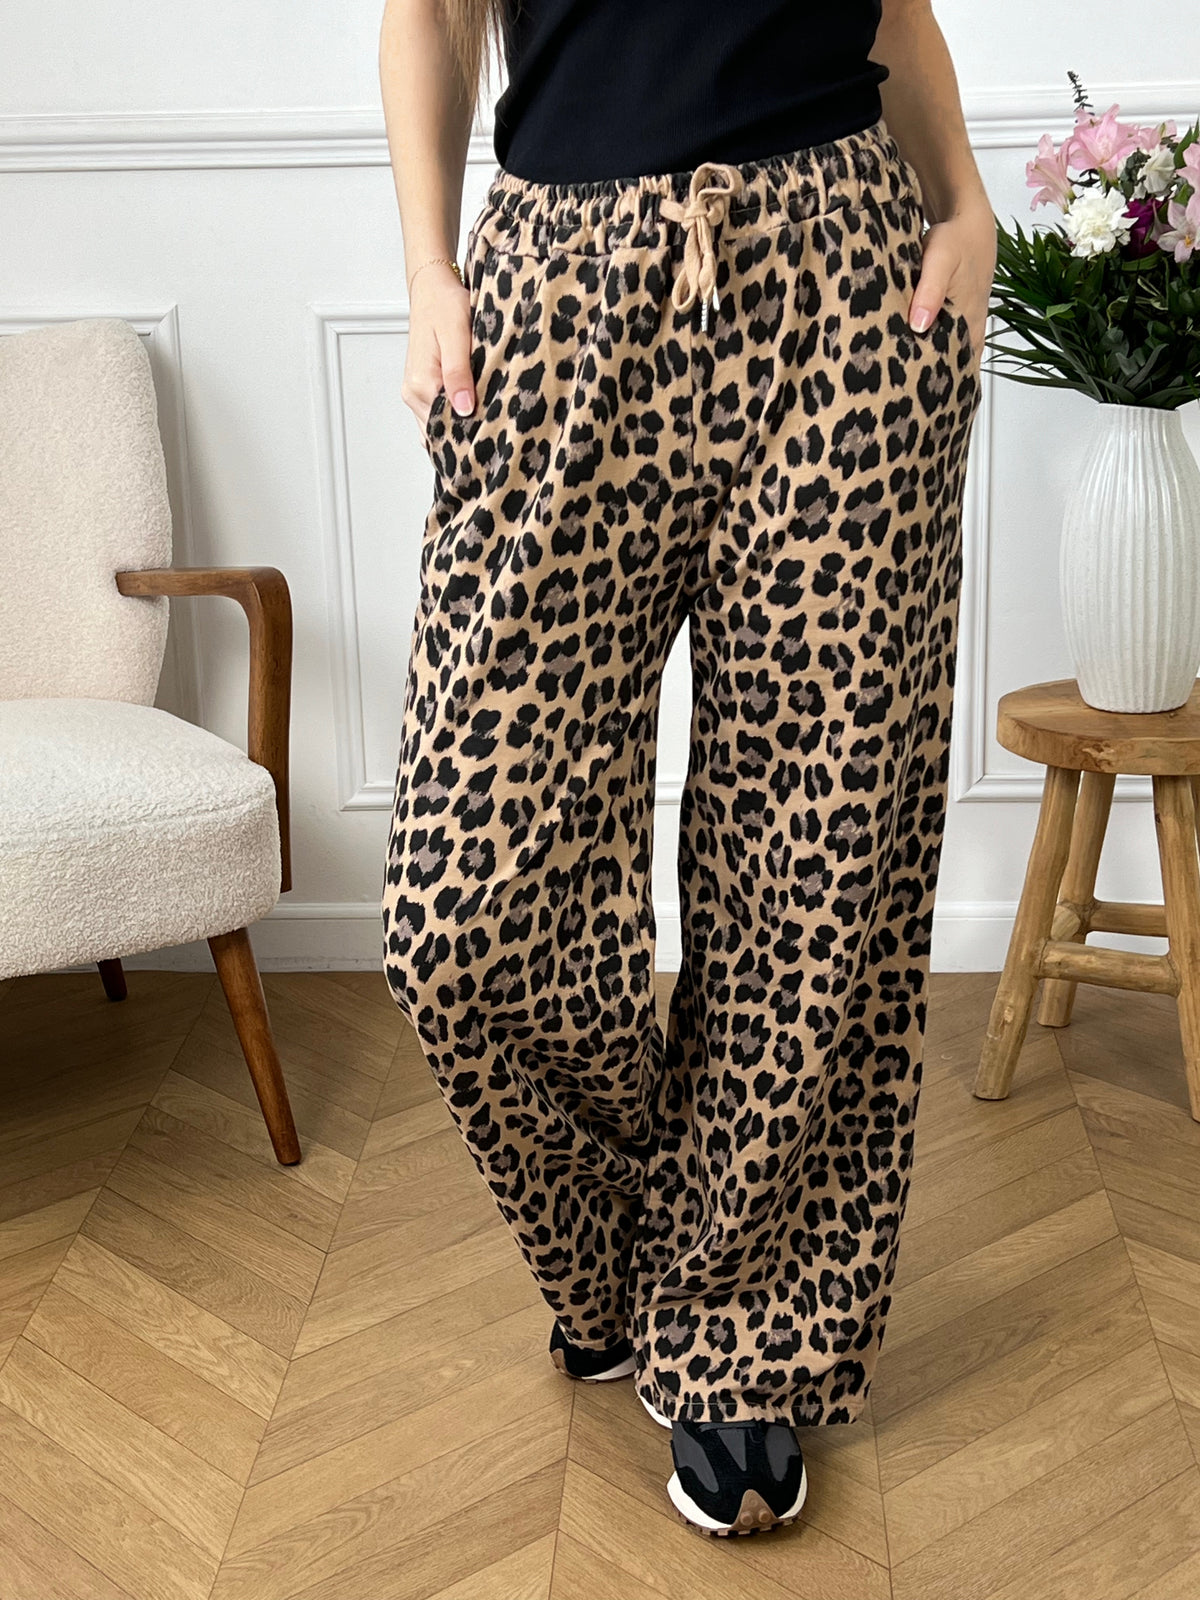 Pantalon léopard marron : Adela